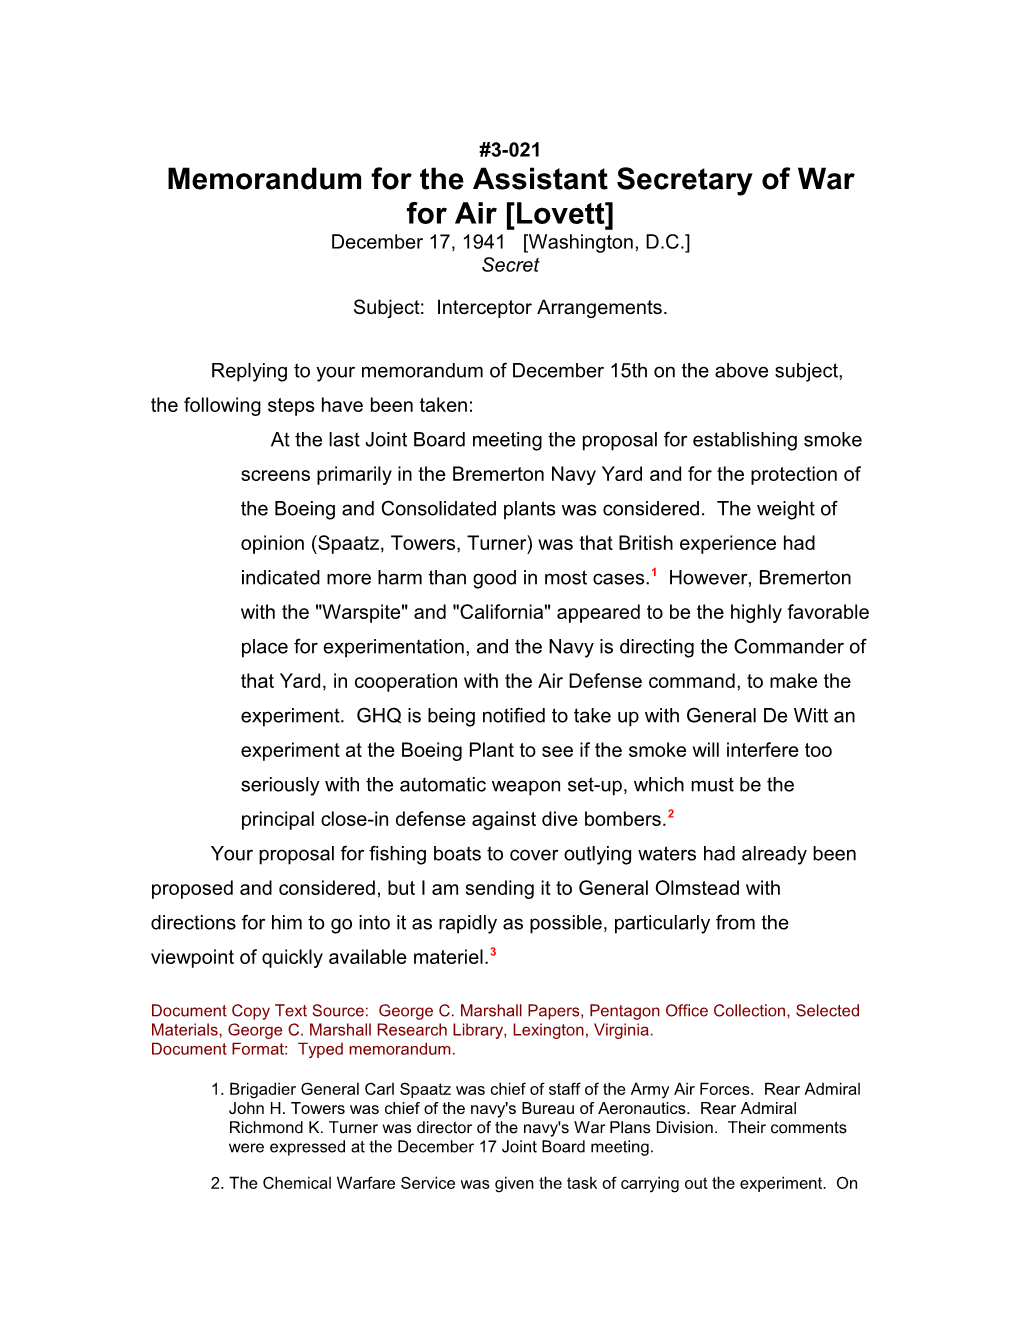 Memorandum for the Assistant Secretary of War for Air Lovett